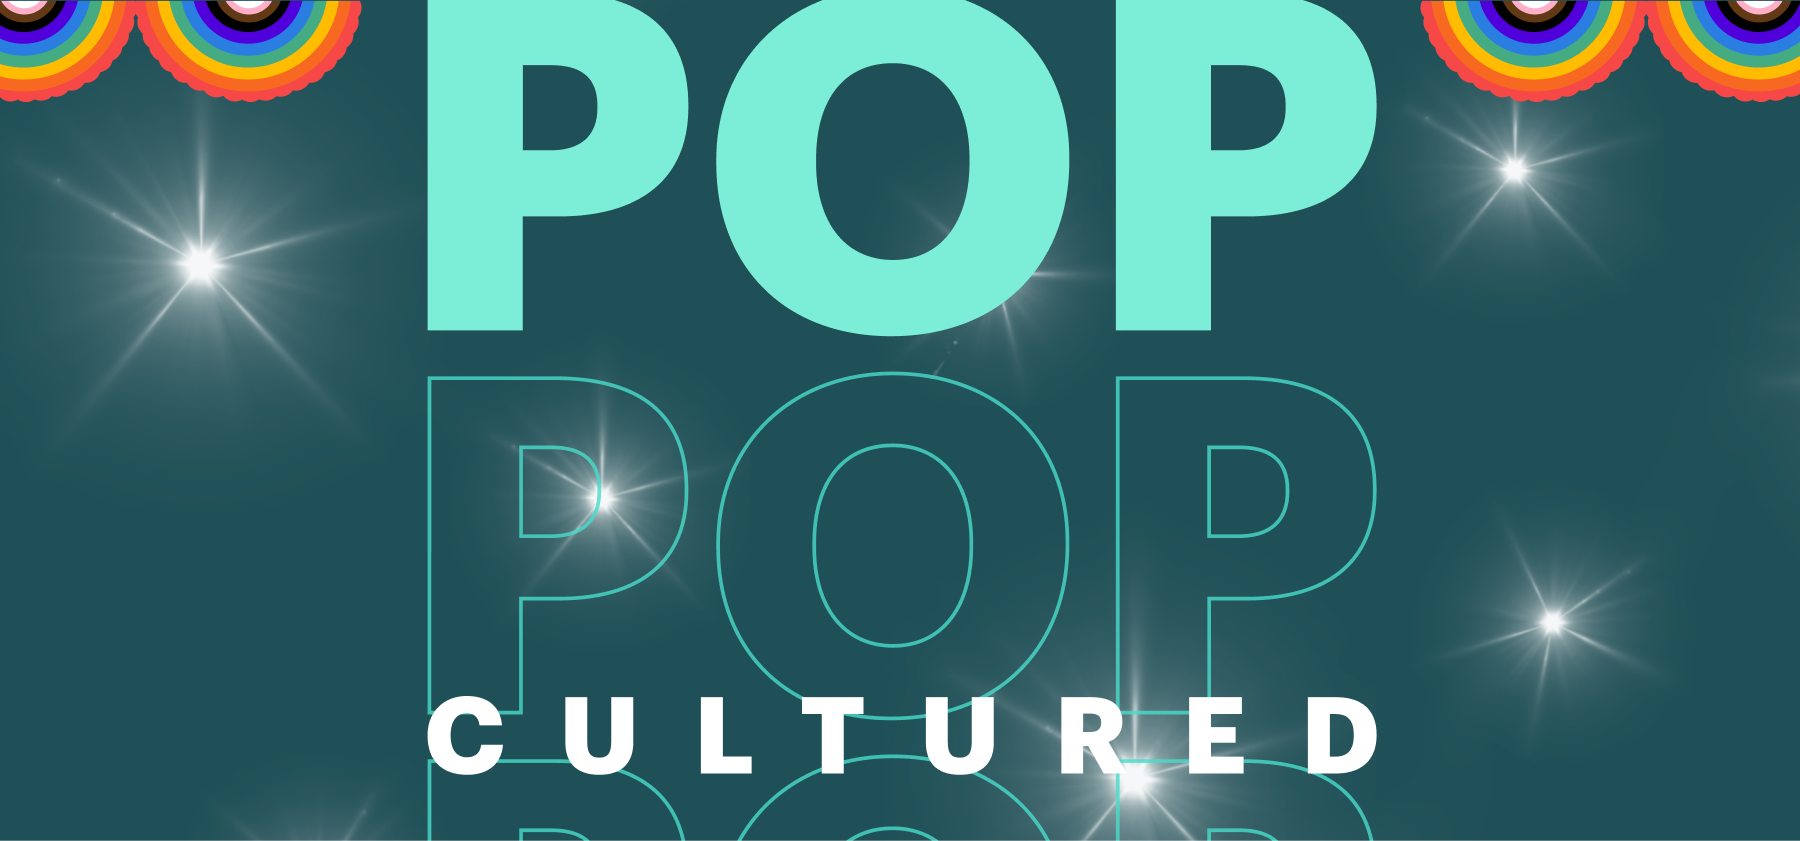 Pop Cultured